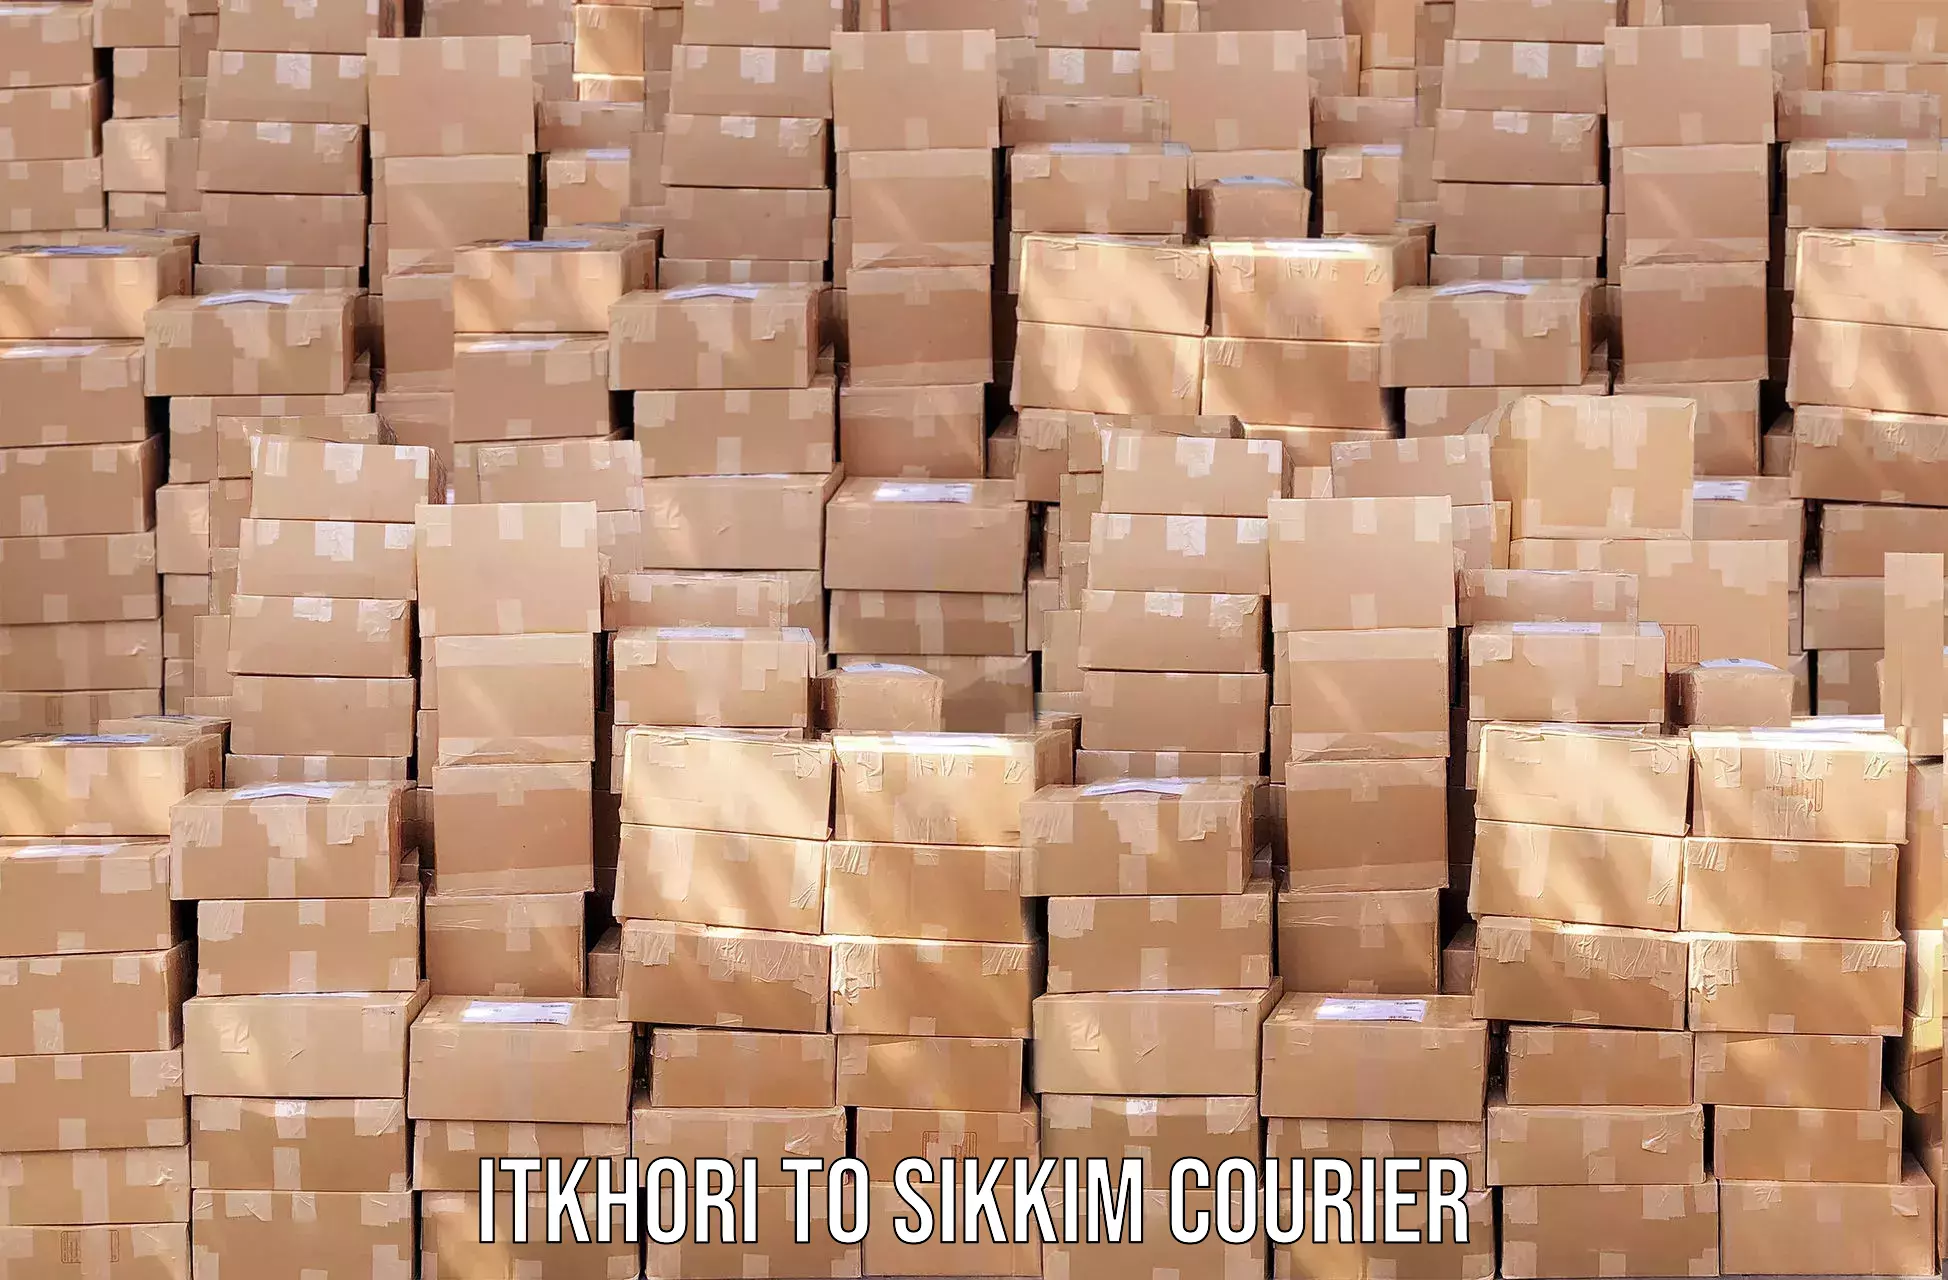 Efficient logistics management in Itkhori to Sikkim